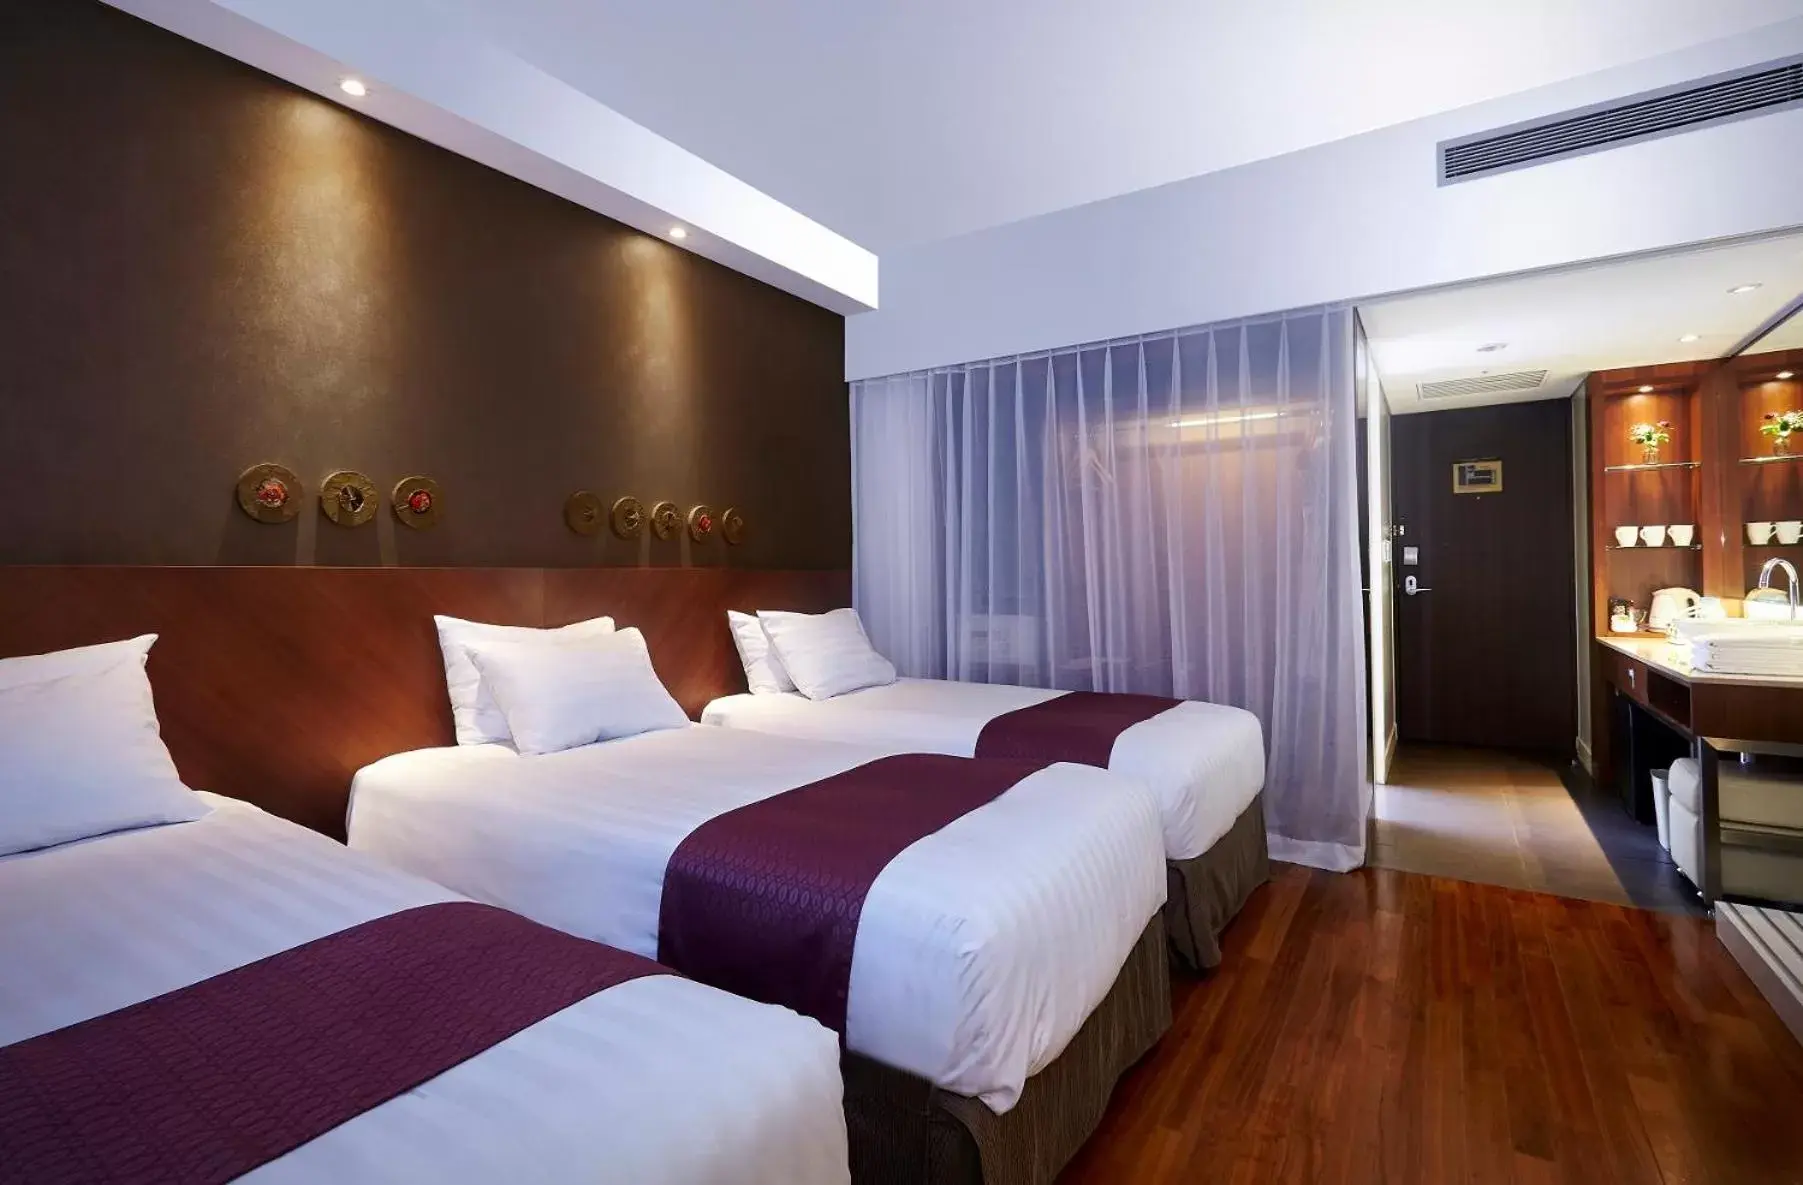 Standard Triple Room in Hotel Kukdo